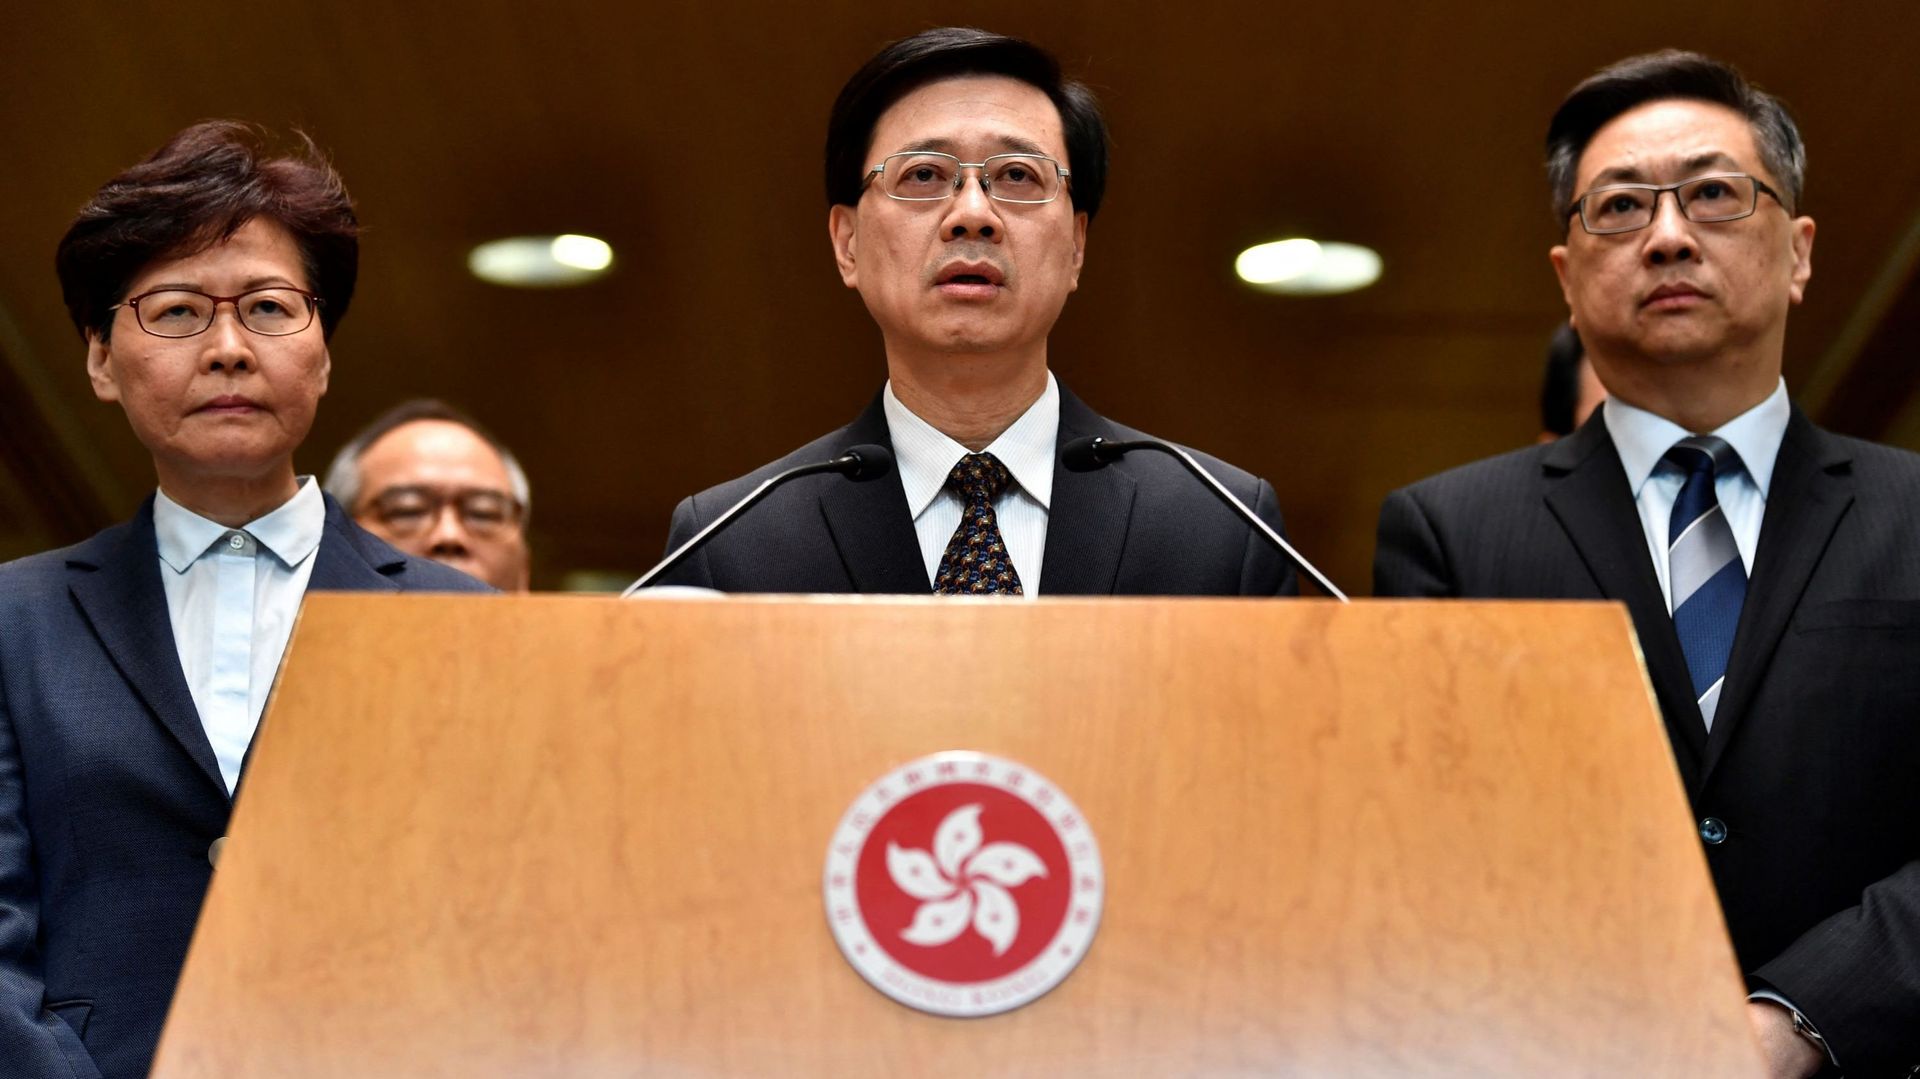 La cheffe de l’exécutif de Hong Kong Carrie Lam (à gauche) et le chef de la police Stephen Lo (à droite) regardent le chef de la sécurité de Hong Kong, John Lee (centre) s’adresser aux médias lors d’une conférence de presse à Hong Kong le 22 juillet 2019.